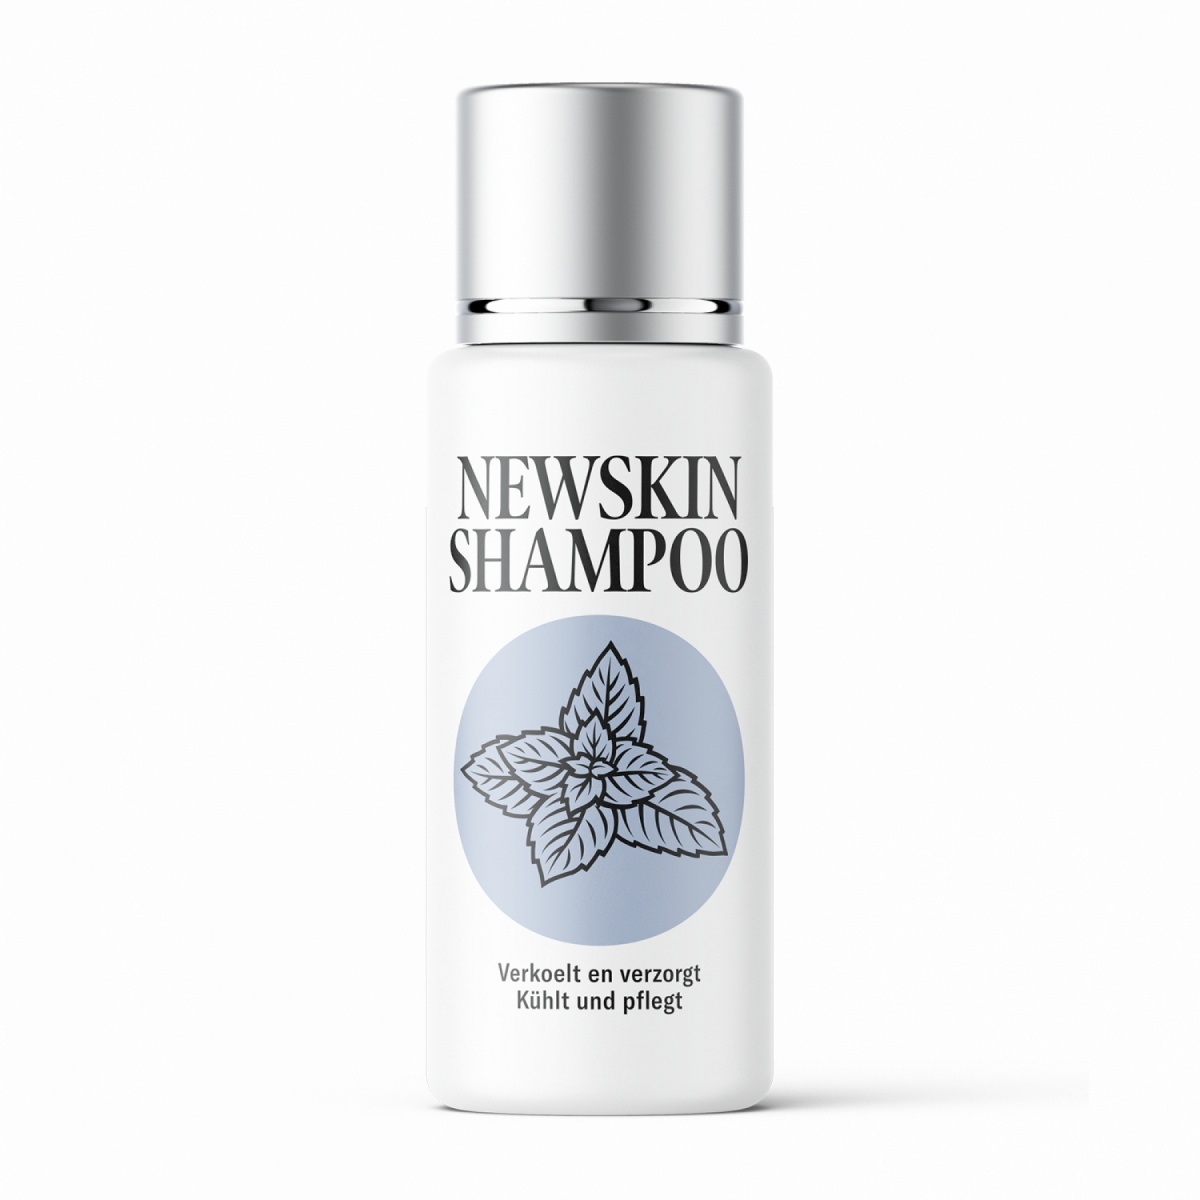 Newskin Shampoo 200 ml.